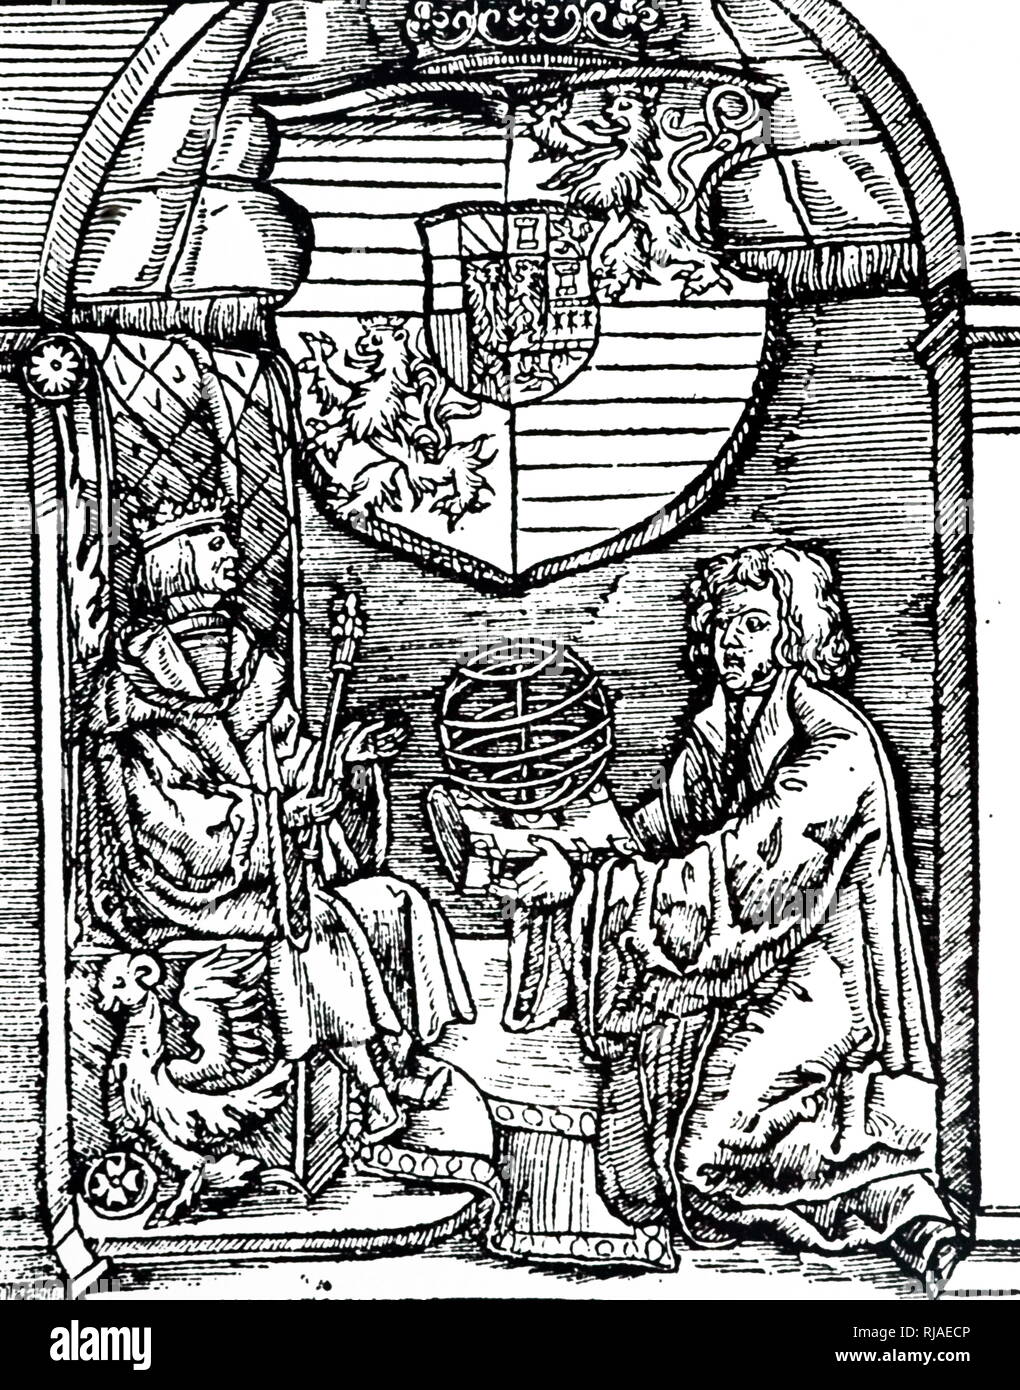 Gravure sur bois représentant FERDINAND I ; Saint Empereur romain 1558-64, roi de Bohême et de Hongrie 1526. À partir de la page de titre de l'De Sphaericus de Théodose de Tripoli (2e siècle). Cette première traduction intégrale de l'œuvre, a été préparé par Johann Voegelin qui est illustré présentant le livre et une sphère armillaire à l'Empereur - Vienne 1529 Banque D'Images